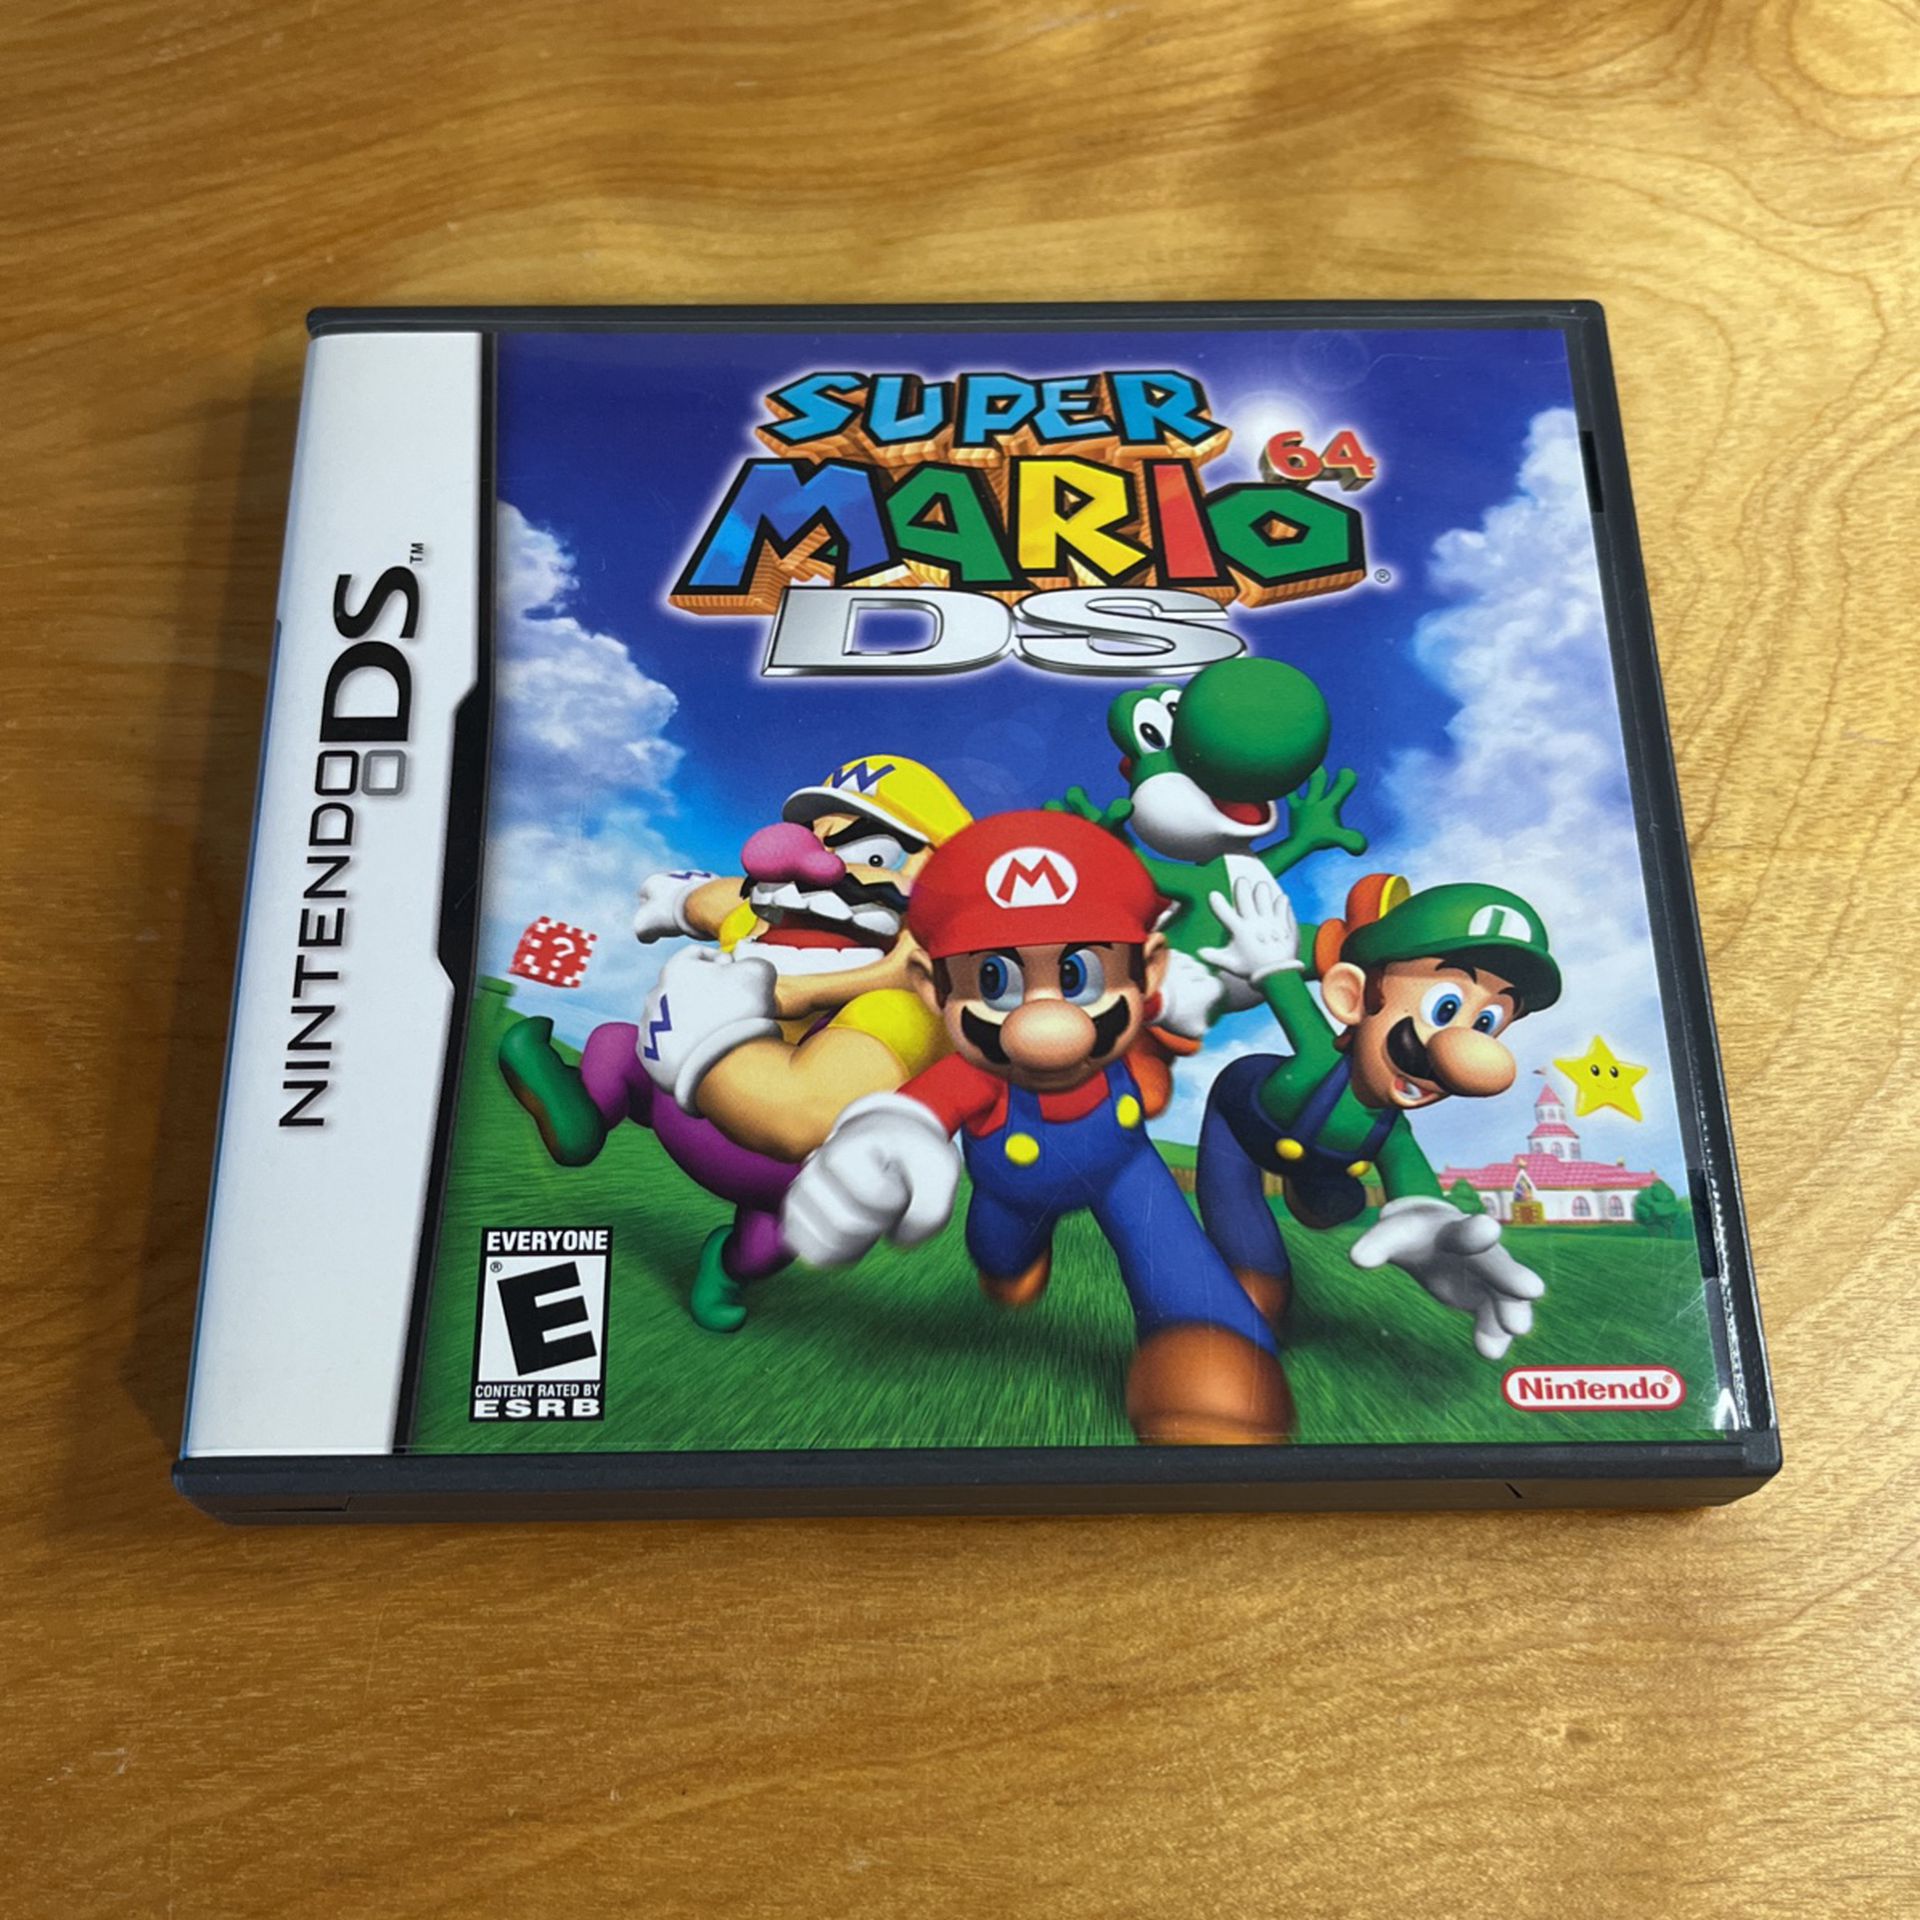 Nintendo DS - Super Mario 64 DS